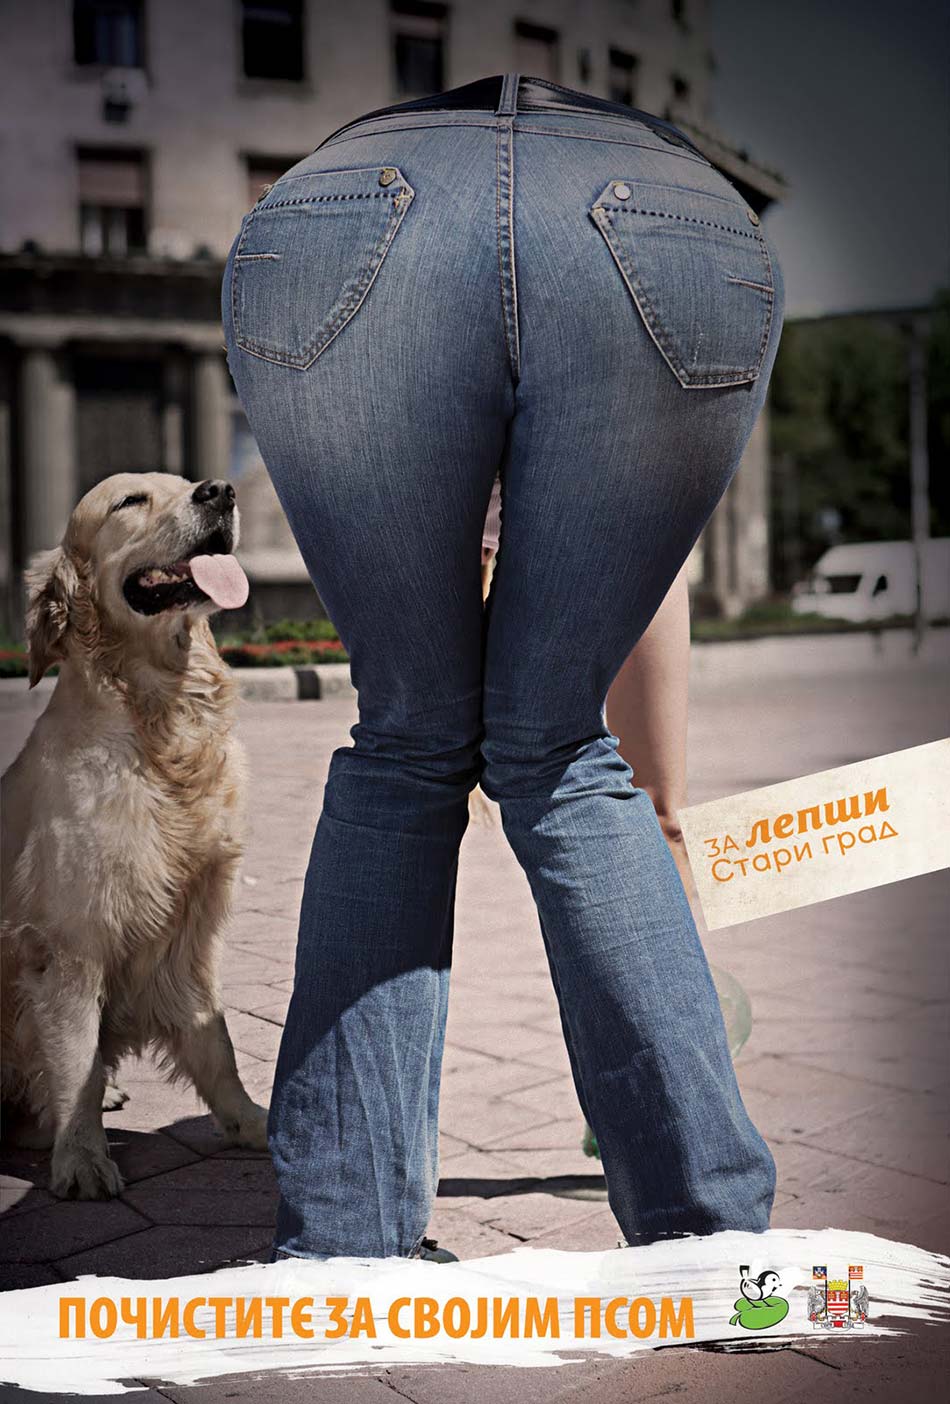 Sagnuta devojka u džinsu čisti: reklamiranje Starog grada Beograda